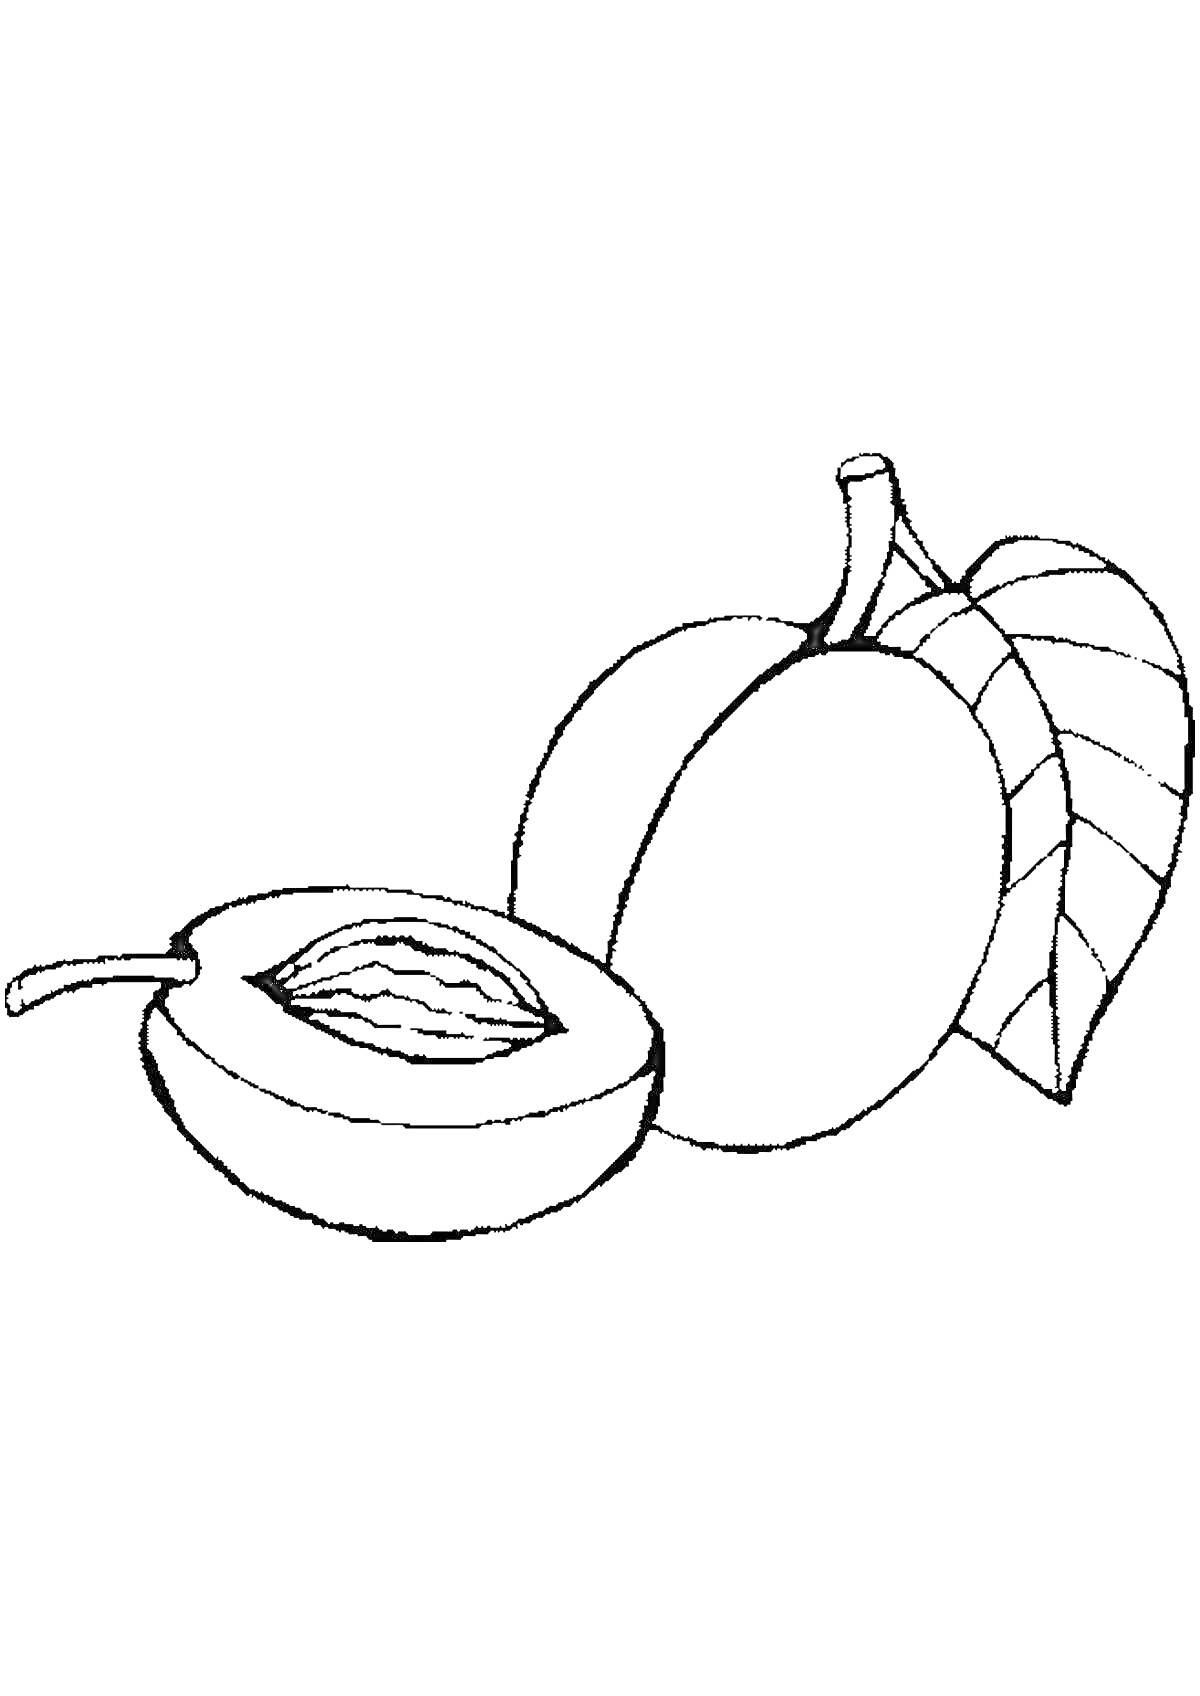 Раскраска Абрикос с косточкой, целый абрикос и лист